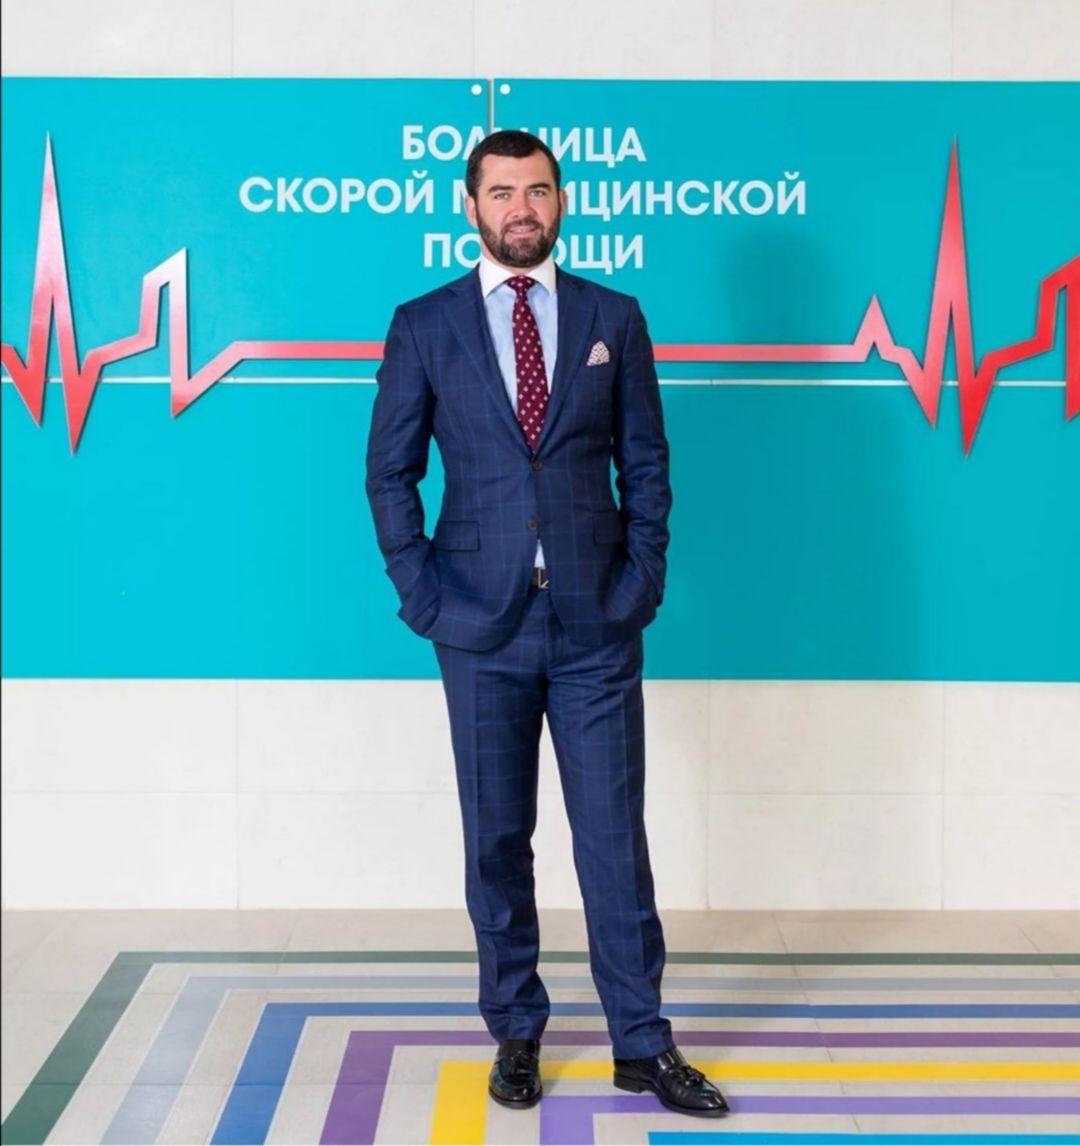 Главный врач горбольницы № 2 Белгорода Антон Бондарев покинет свой пост